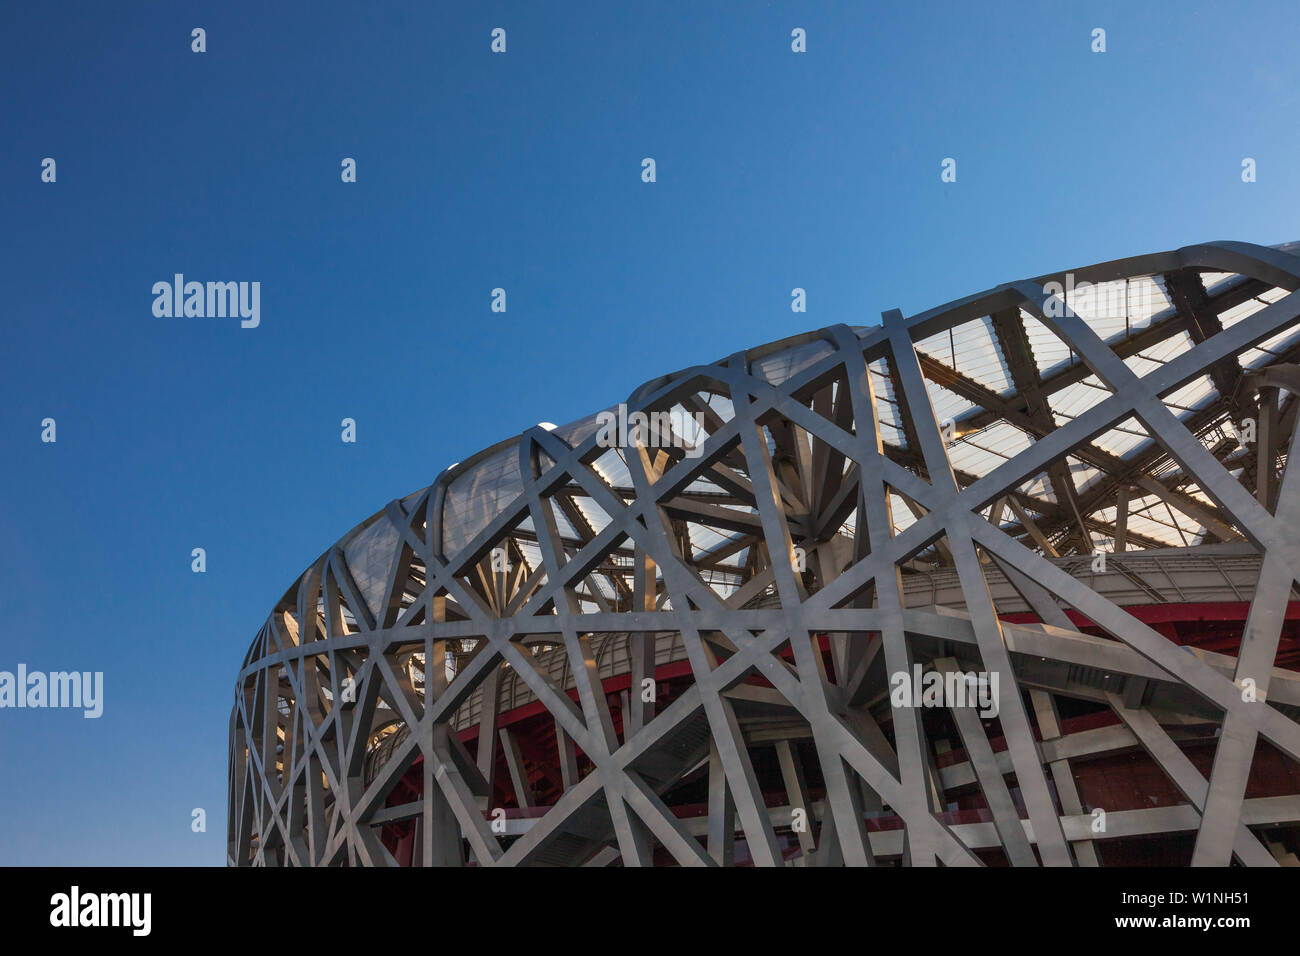 Nido de Pájaro stadion, el Parque Olímpico, Beijing, China Foto de stock